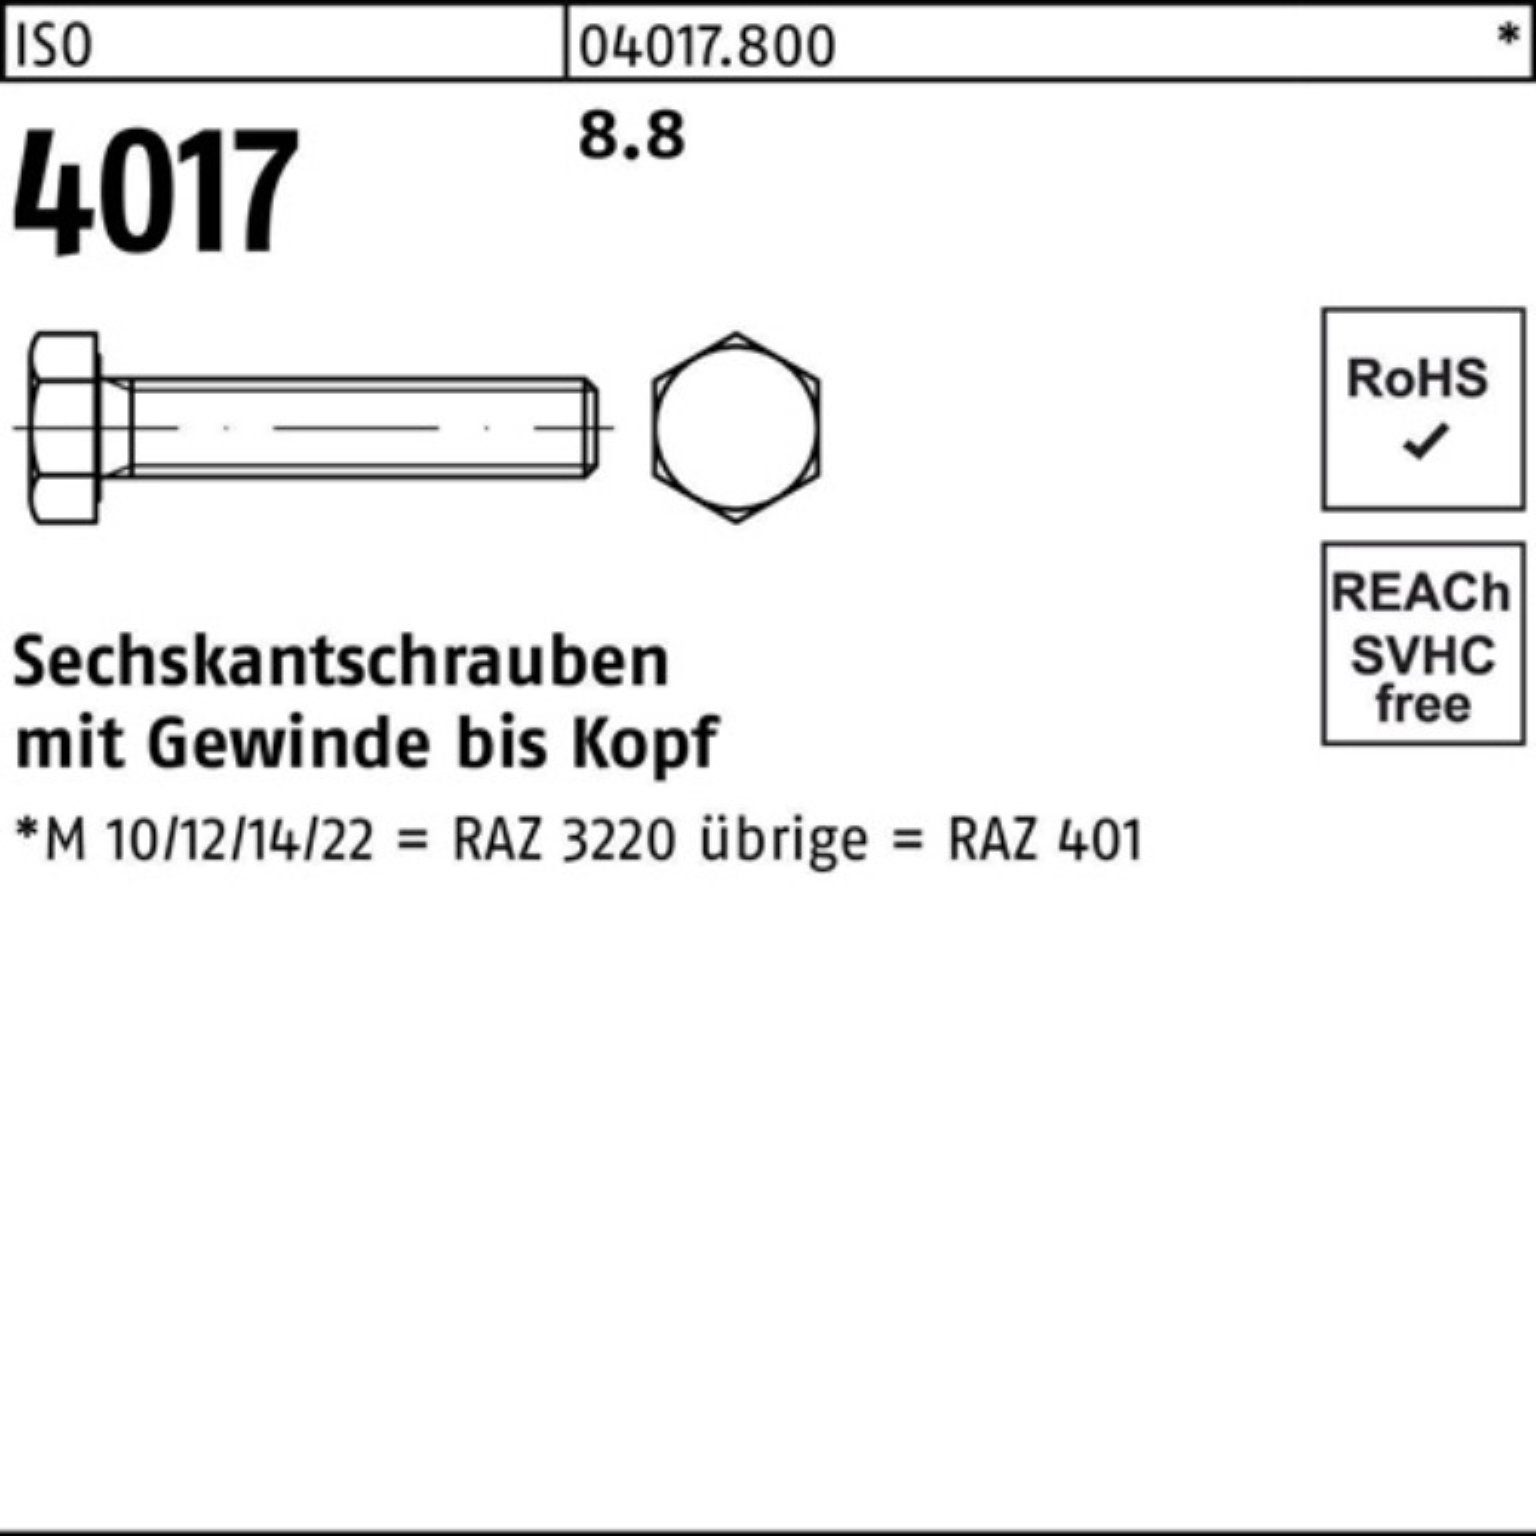 Bufab Sechskantschraube 100er Pack 40 4017 ISO ISO M14x Sechskantschraube Stück 8.8 VG 180 25